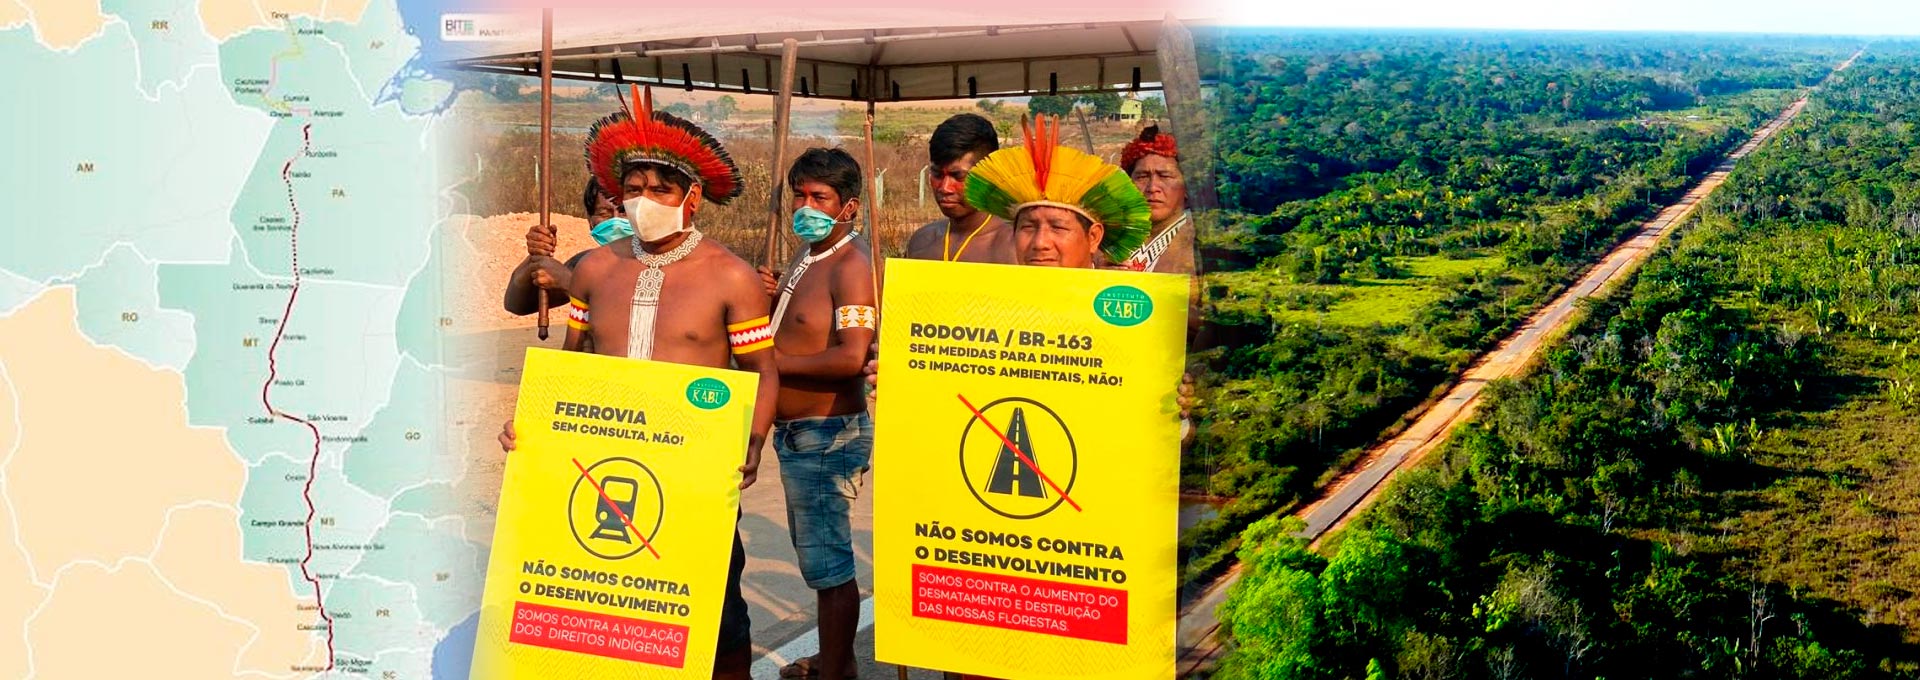 audiodescrição: montagem com três imagens coloridas; uma é uma fotografia de indígenas protestando contra a construção de estradas na amazônia, outra é uma fotografia aérea de uma estrada na floresta e outra é um mapa mostrando a rota de uma das estradas